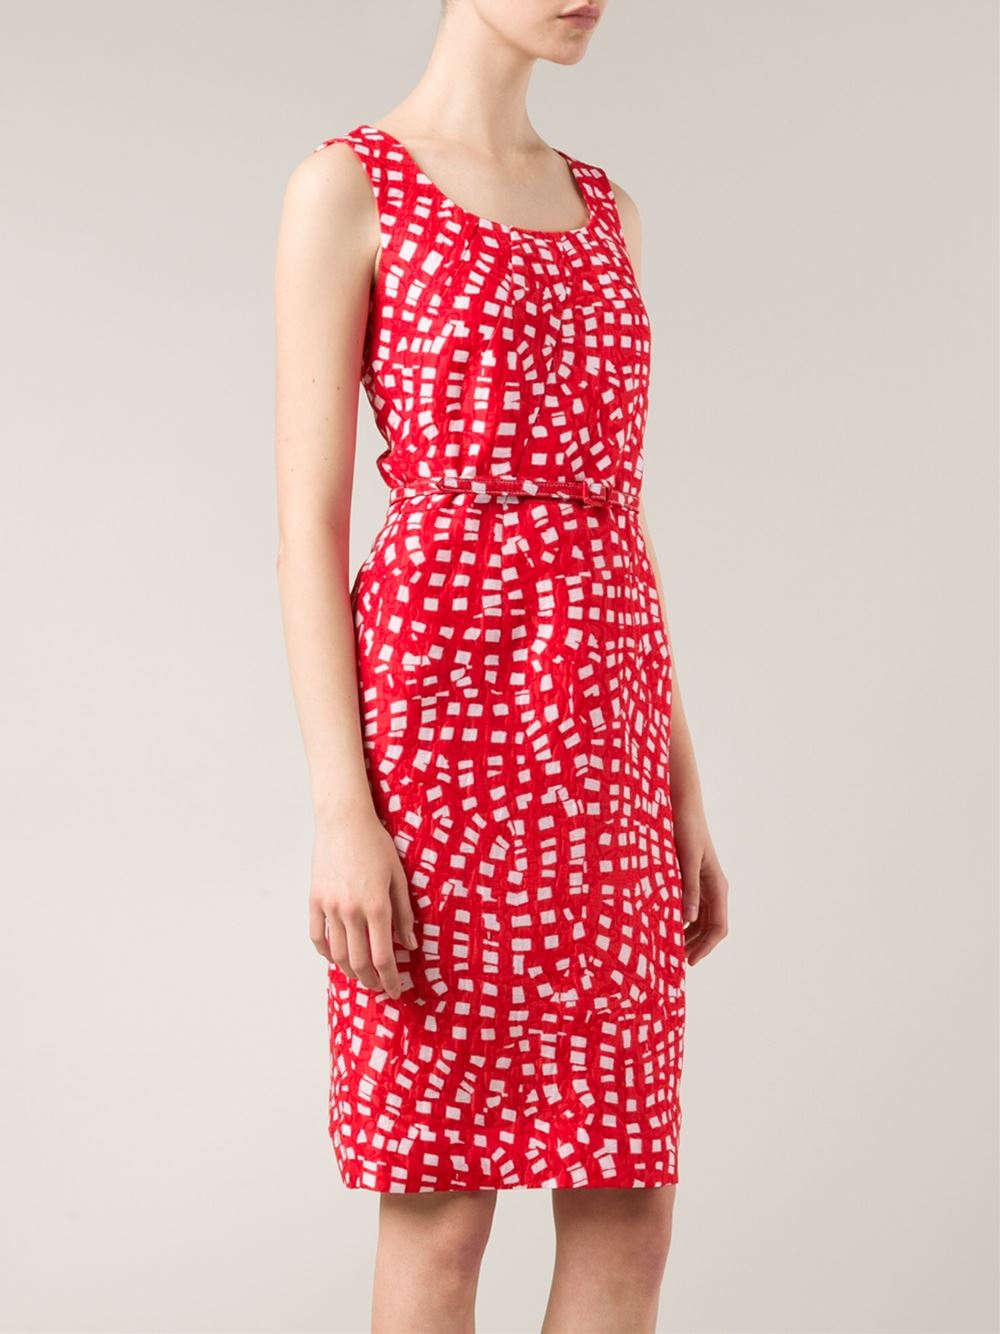 OSCAR DE LA RENTA-Abstract Print Dress-